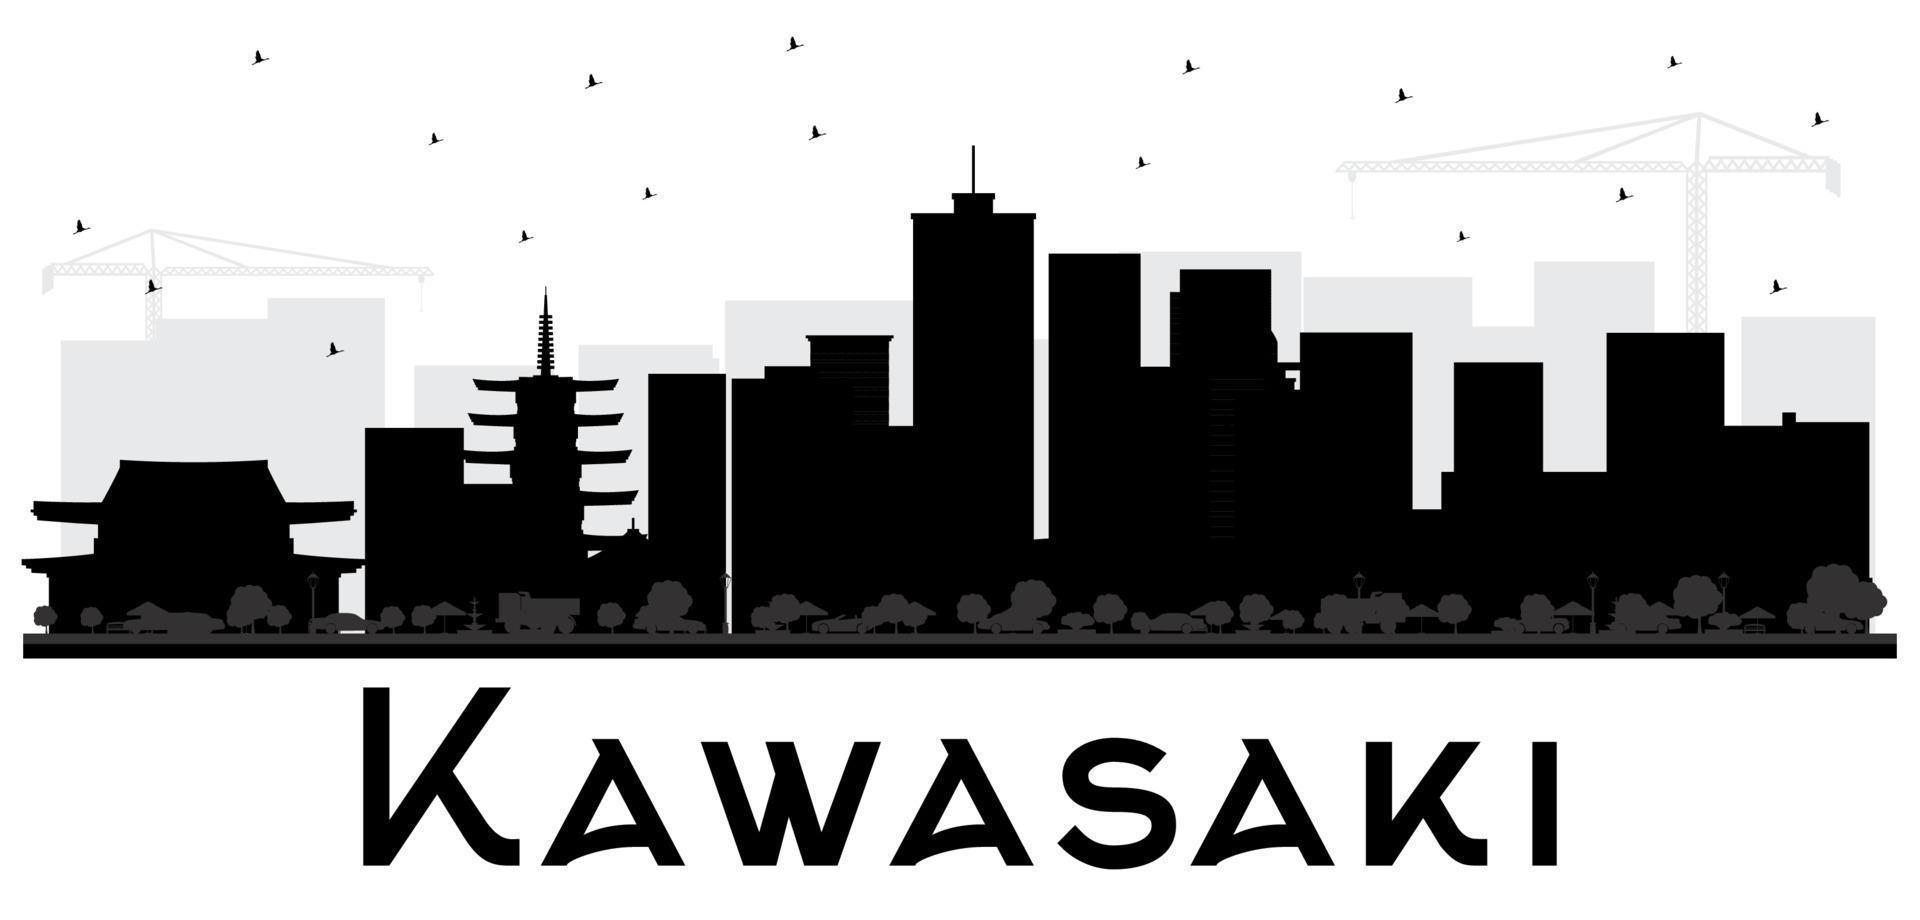 silueta en blanco y negro del horizonte de la ciudad de kawasaki japón. vector